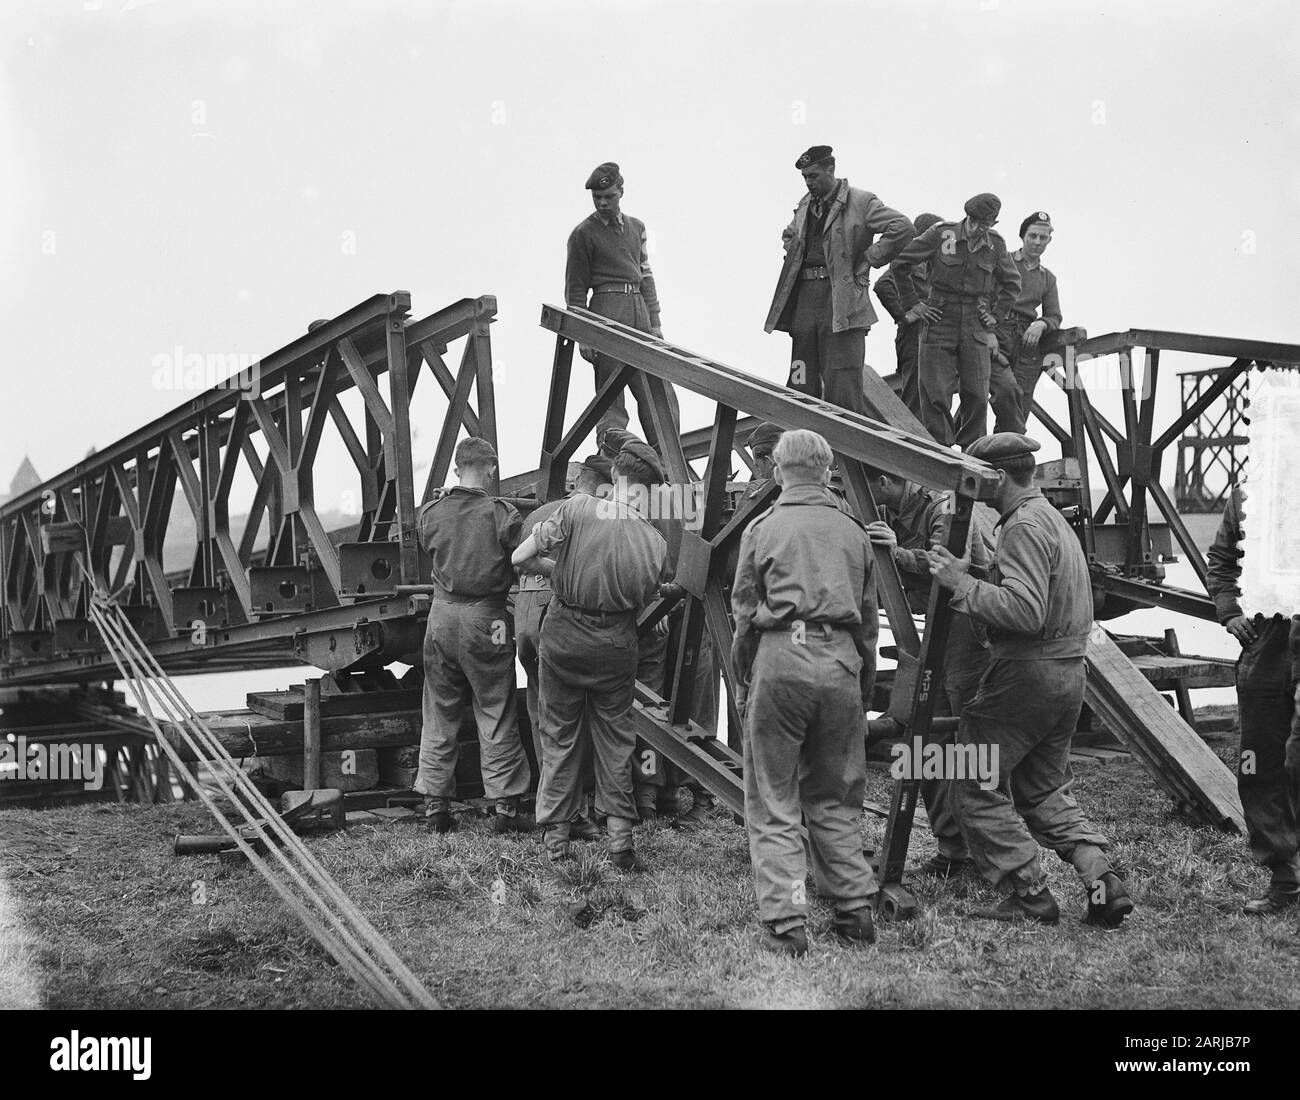 Wijchen. Costruzione di ponti militari sul braccio del Maas Data: 14 ottobre 1953 Località: Gelderland, Wijchen Parole Chiave: Edilizia, ponti Nome personale: Maas Foto Stock